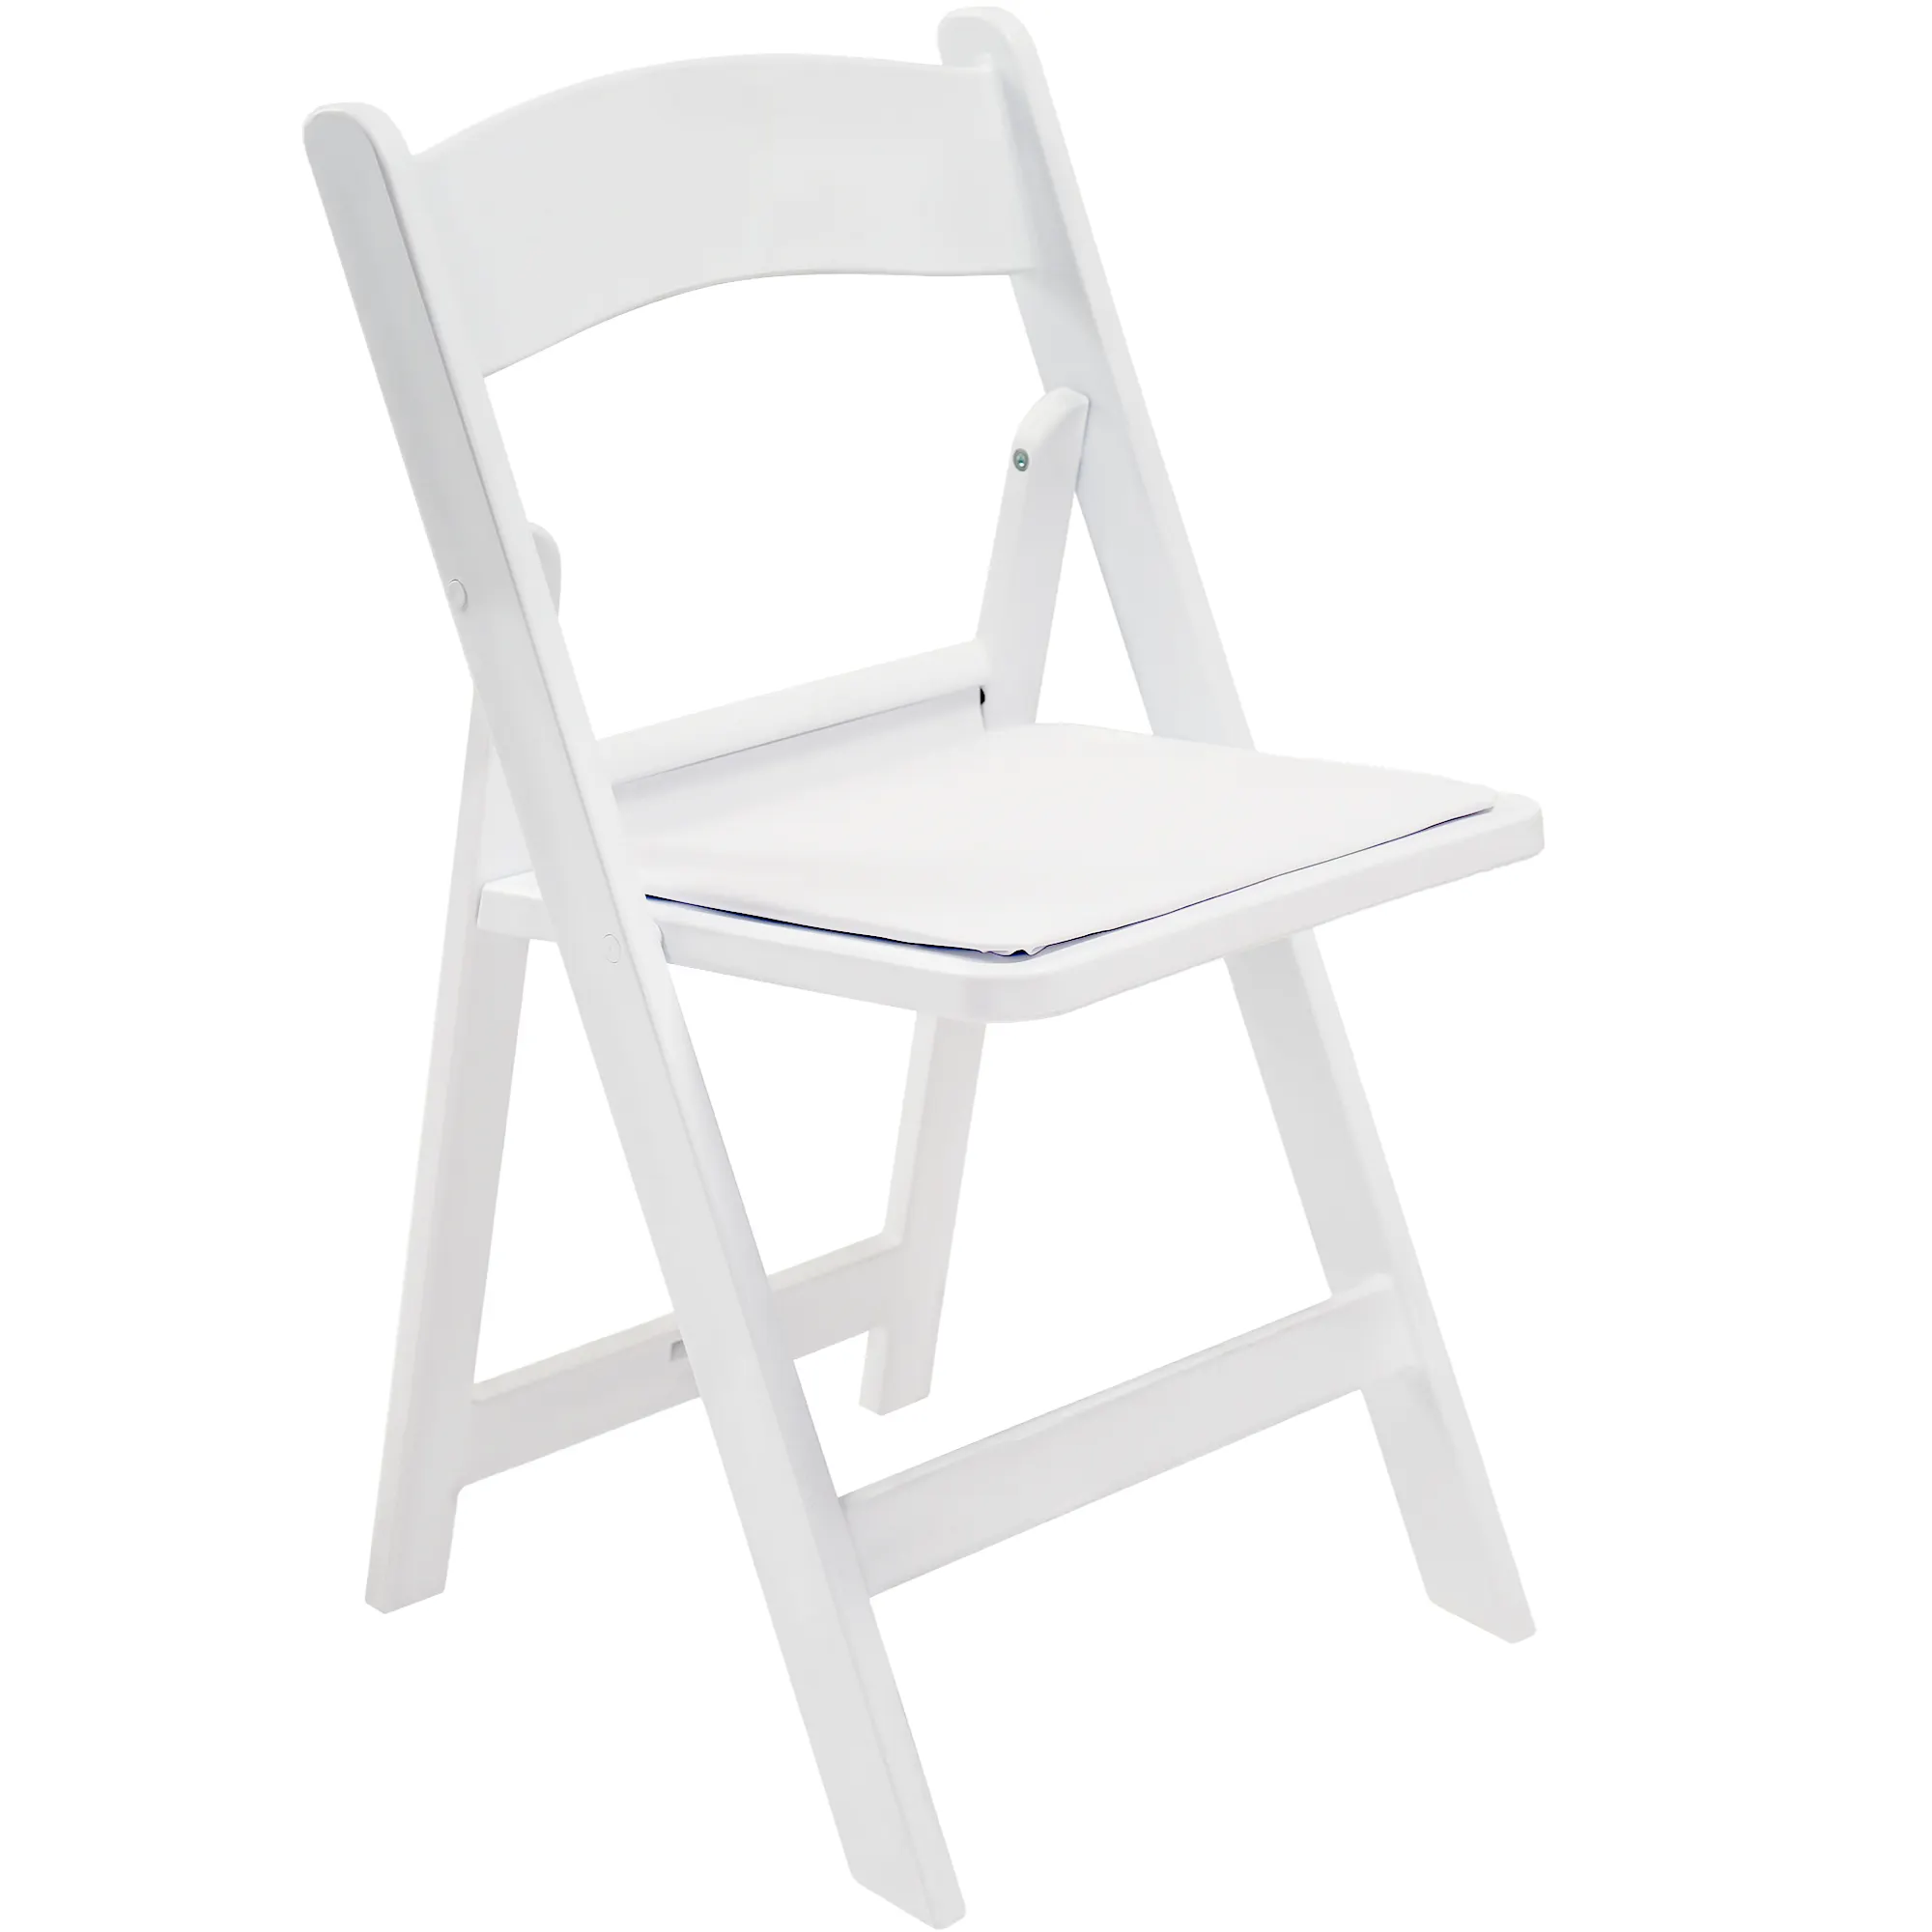 Vingli kursi empuk luar ruangan, kursi makan lipat resin plastik putih untuk pernikahan dan pesta makan